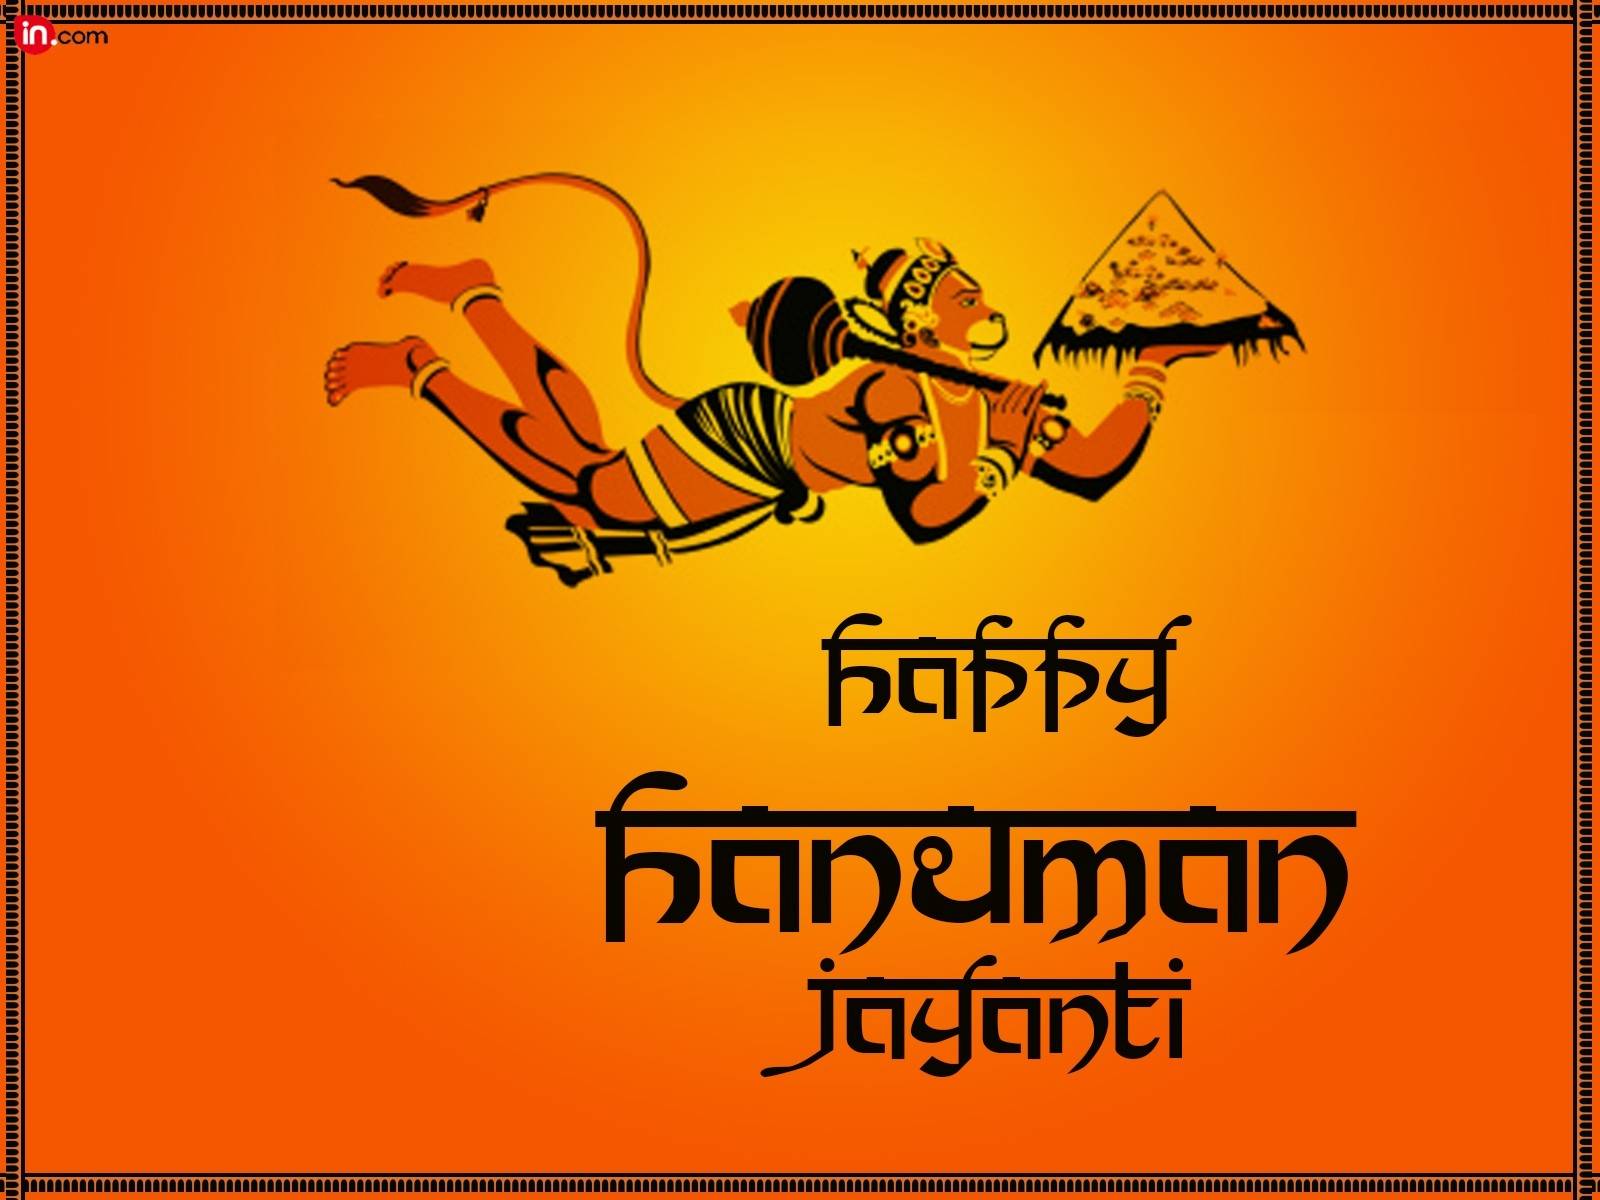 Happy Hanuman Jayanti Beautiful Clipart